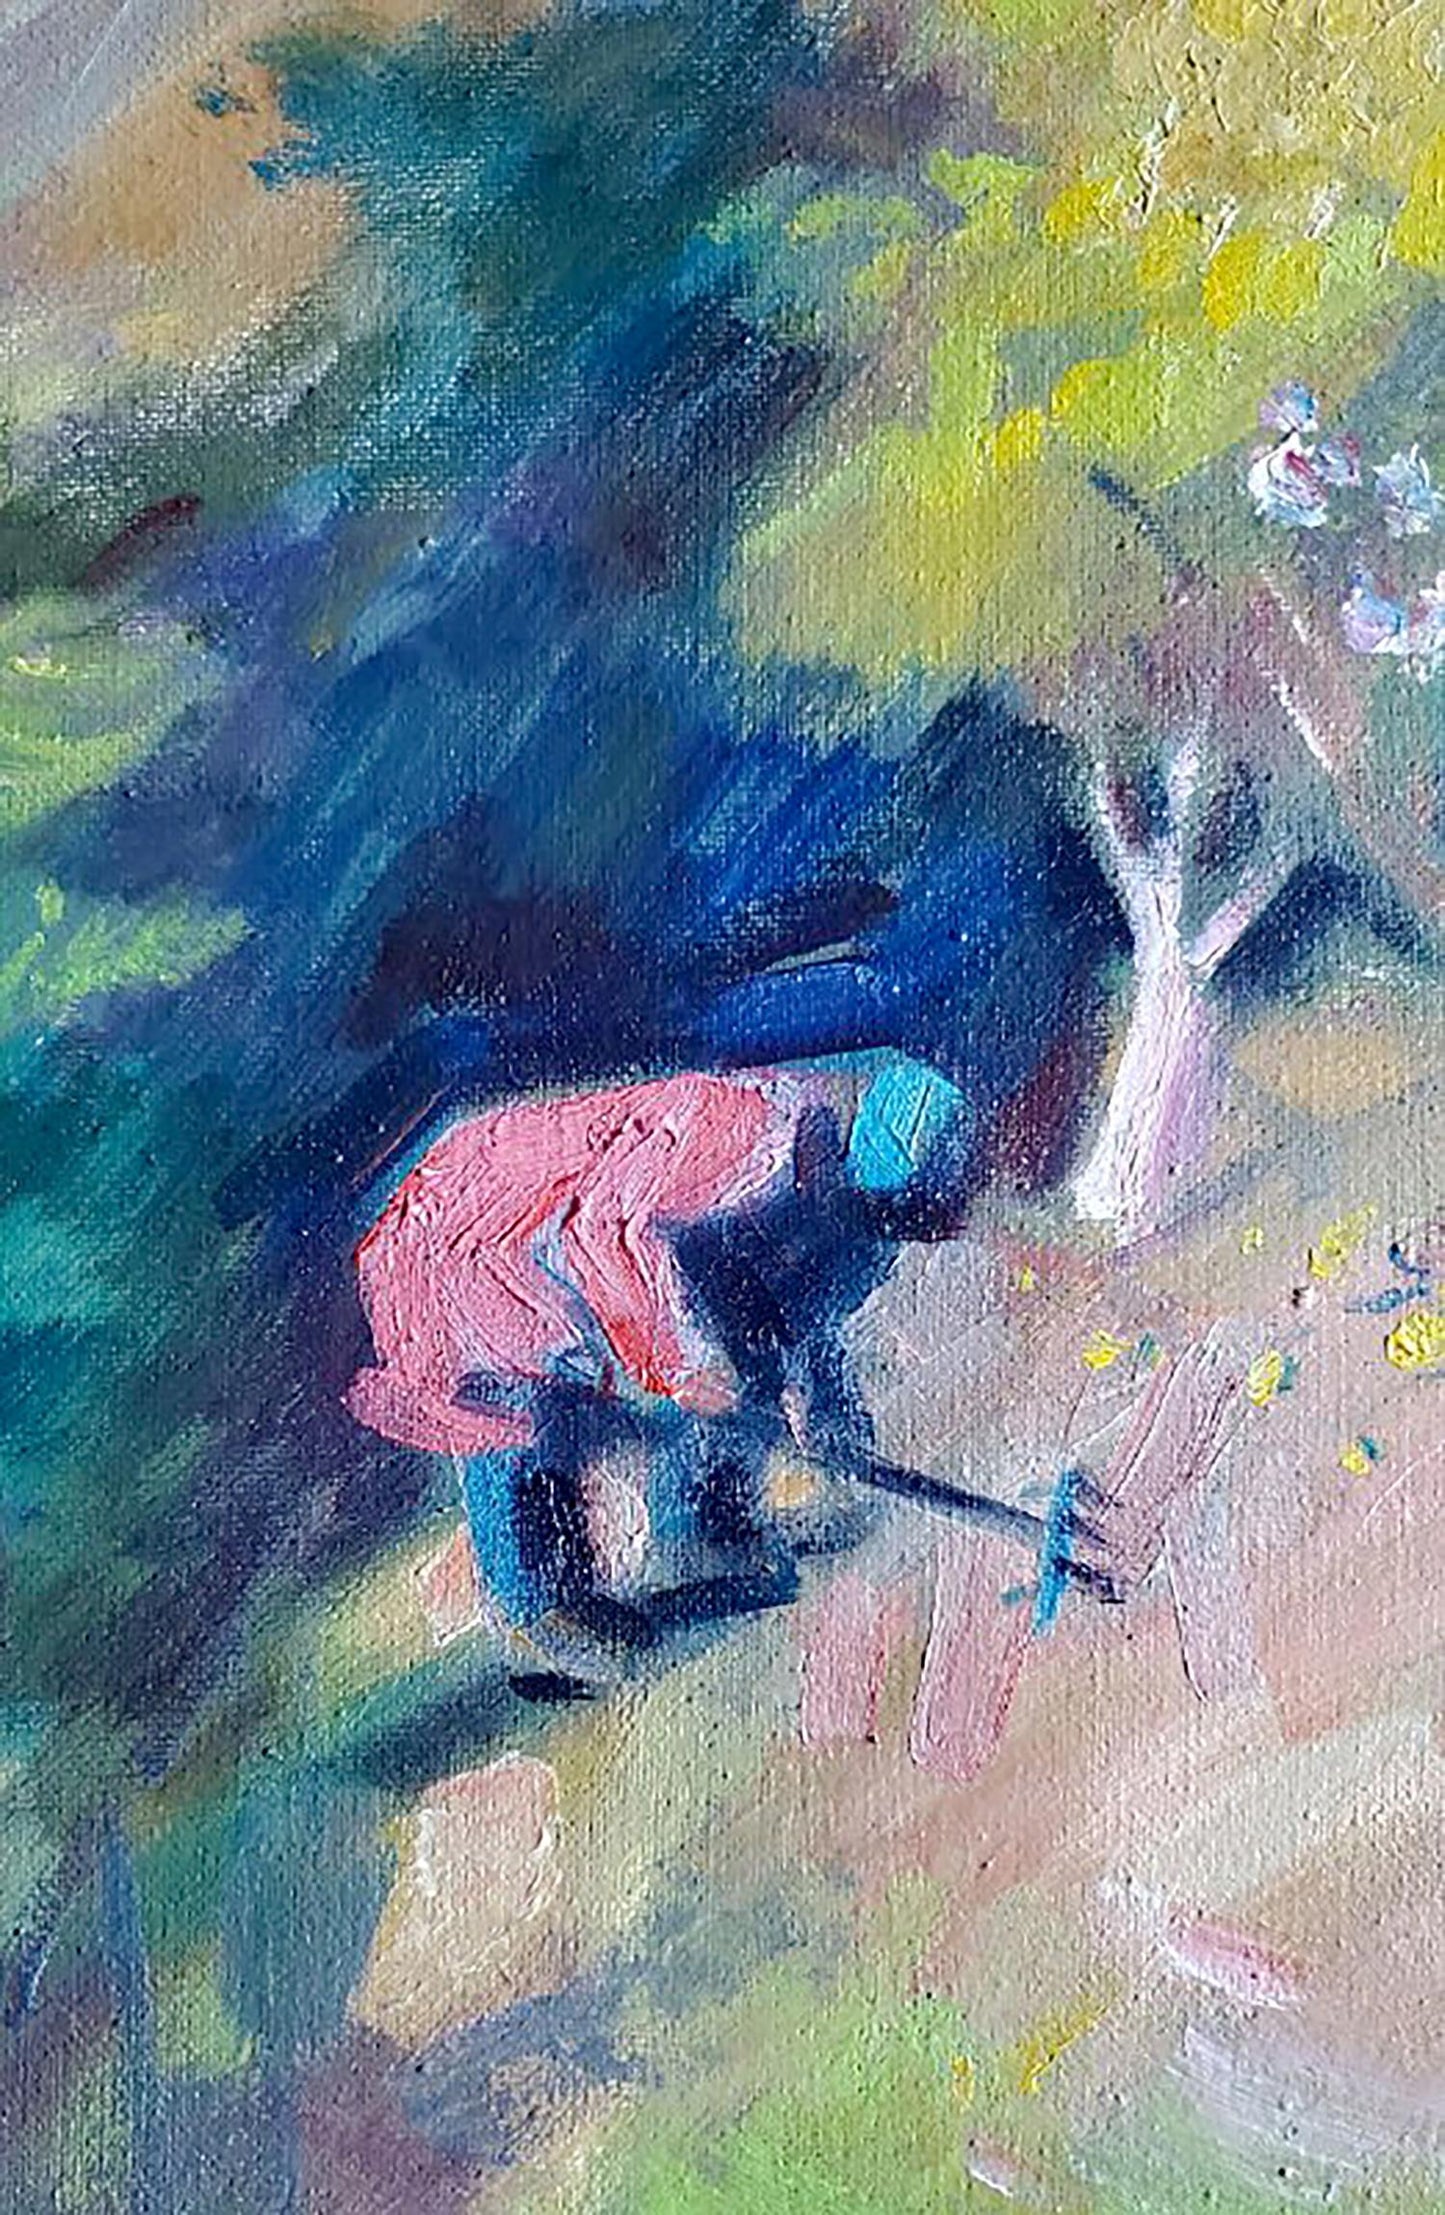 Oil painting Garden cleaning Daniil Litvinov